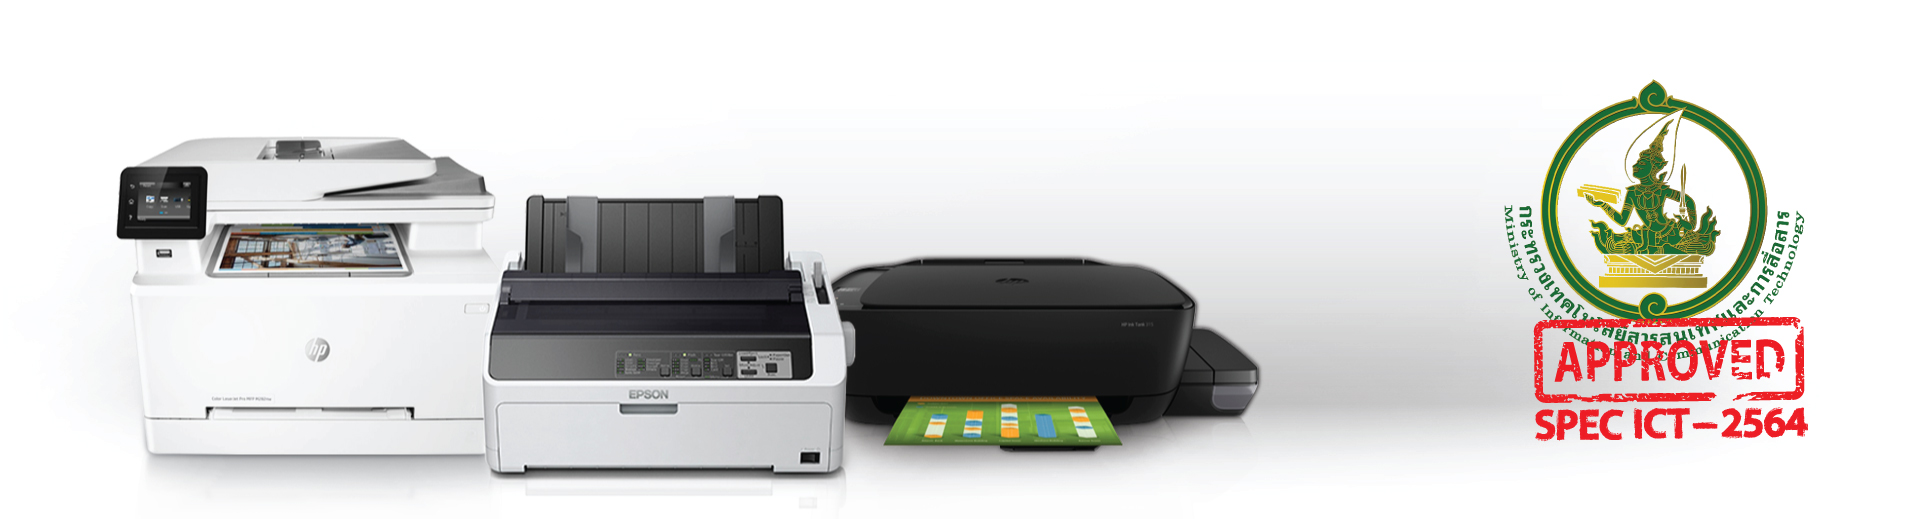 เครื่องพิมพ์แบบฉีดหมึก (Inkjet Printer) สำหรับกระดาษขนาด A3 ราคา 6,300 บาท